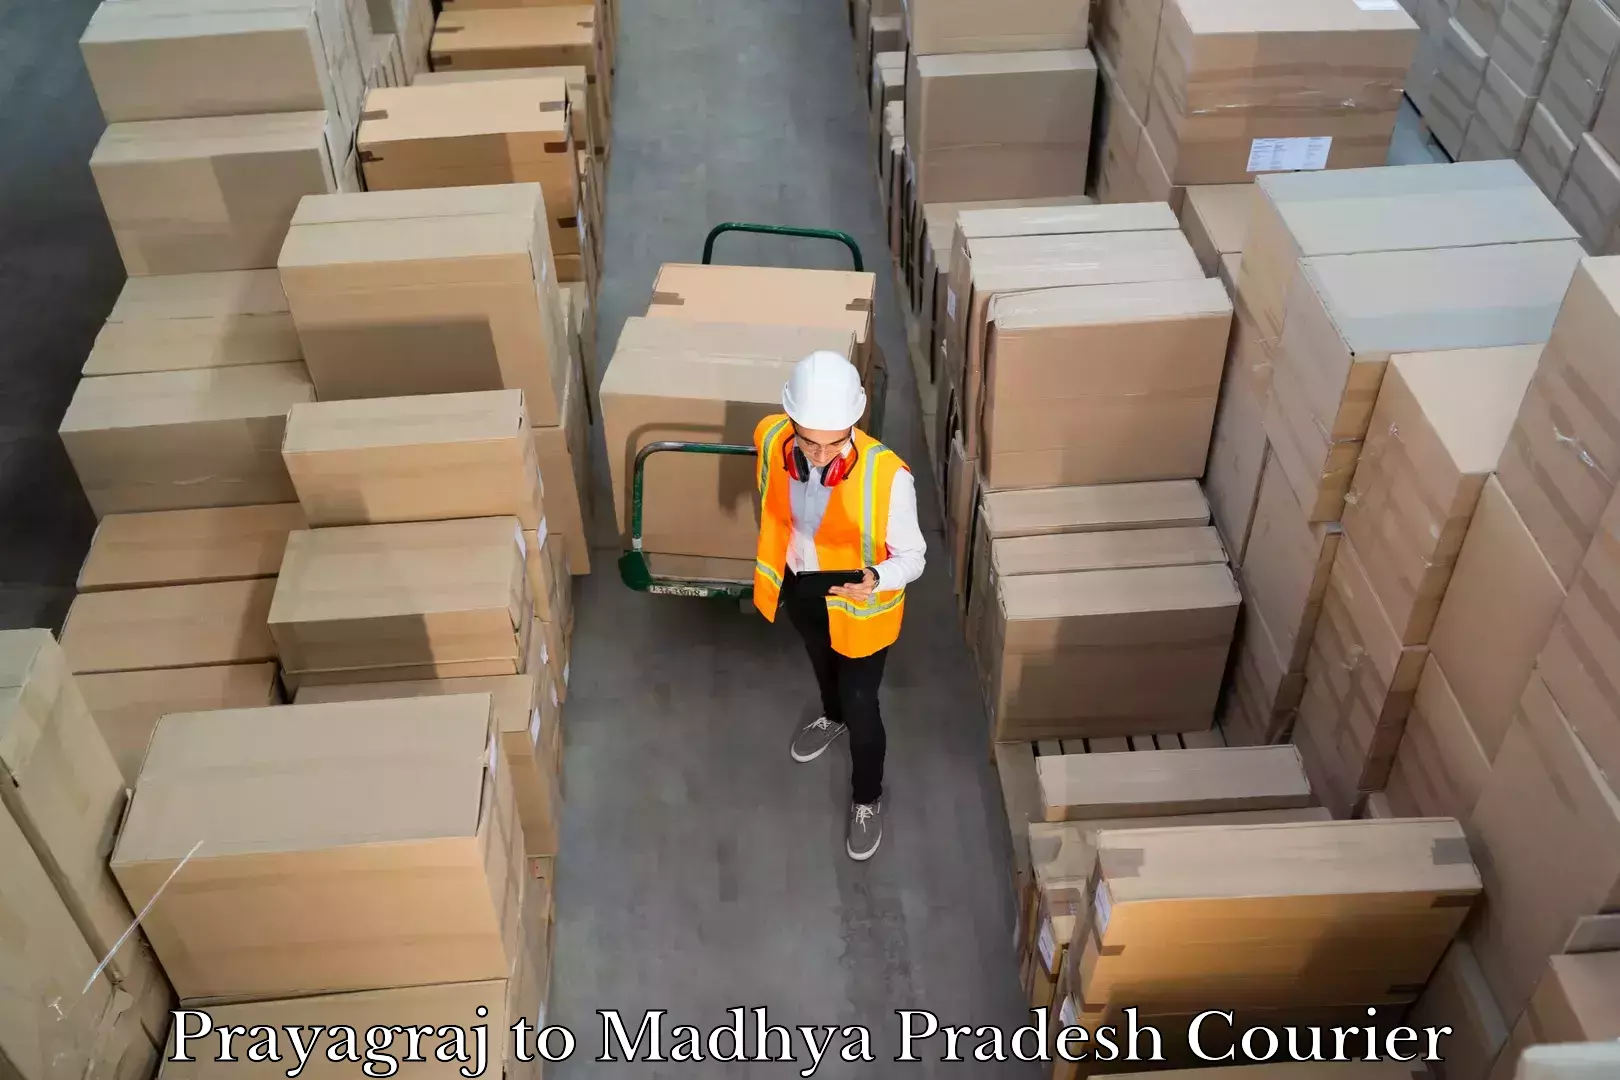 Luggage shipping specialists Prayagraj to Gadarwara